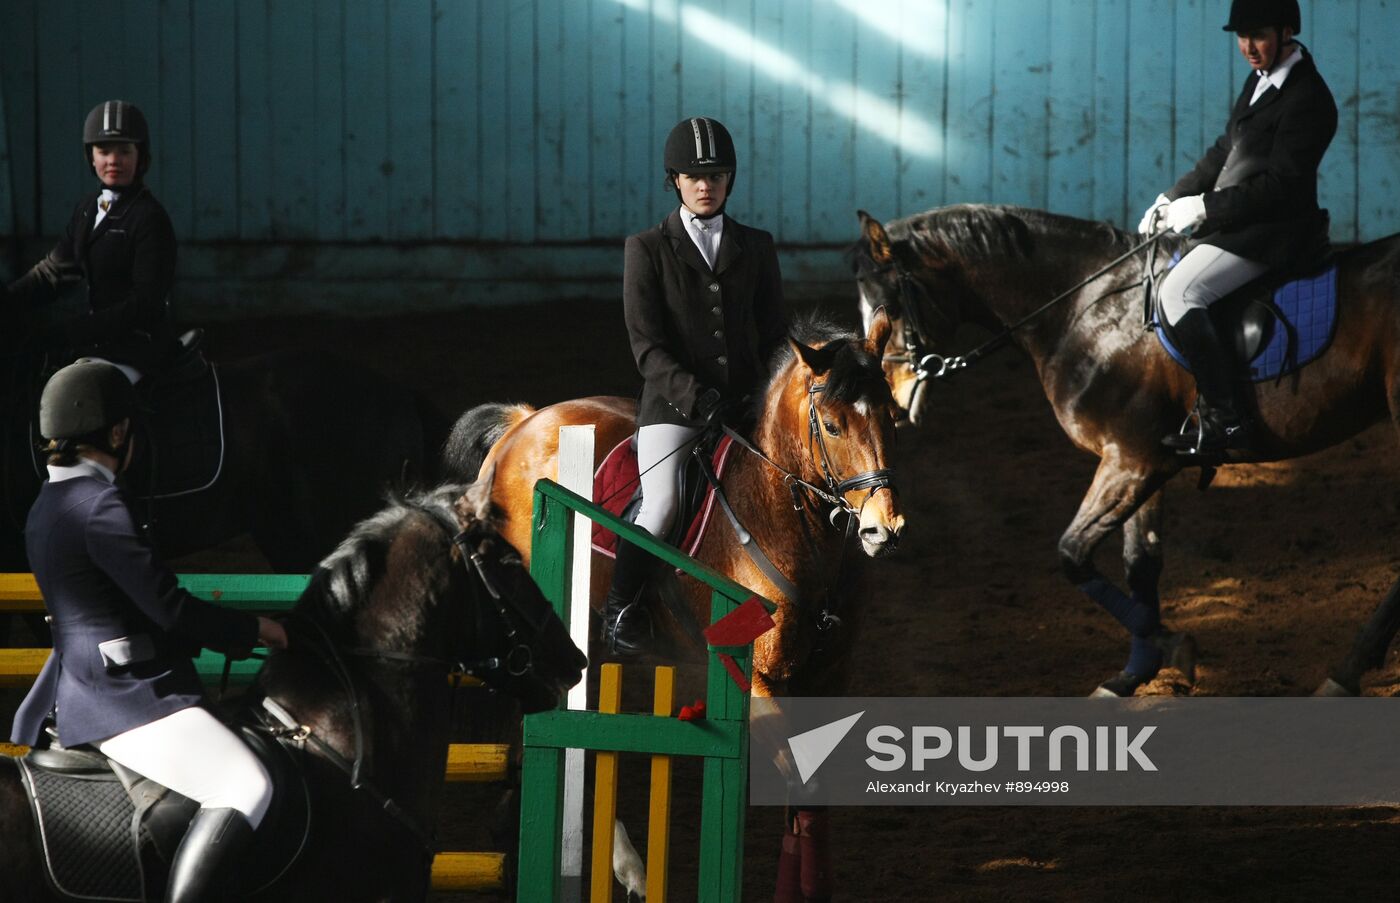 Novosibirsk Equestrian school